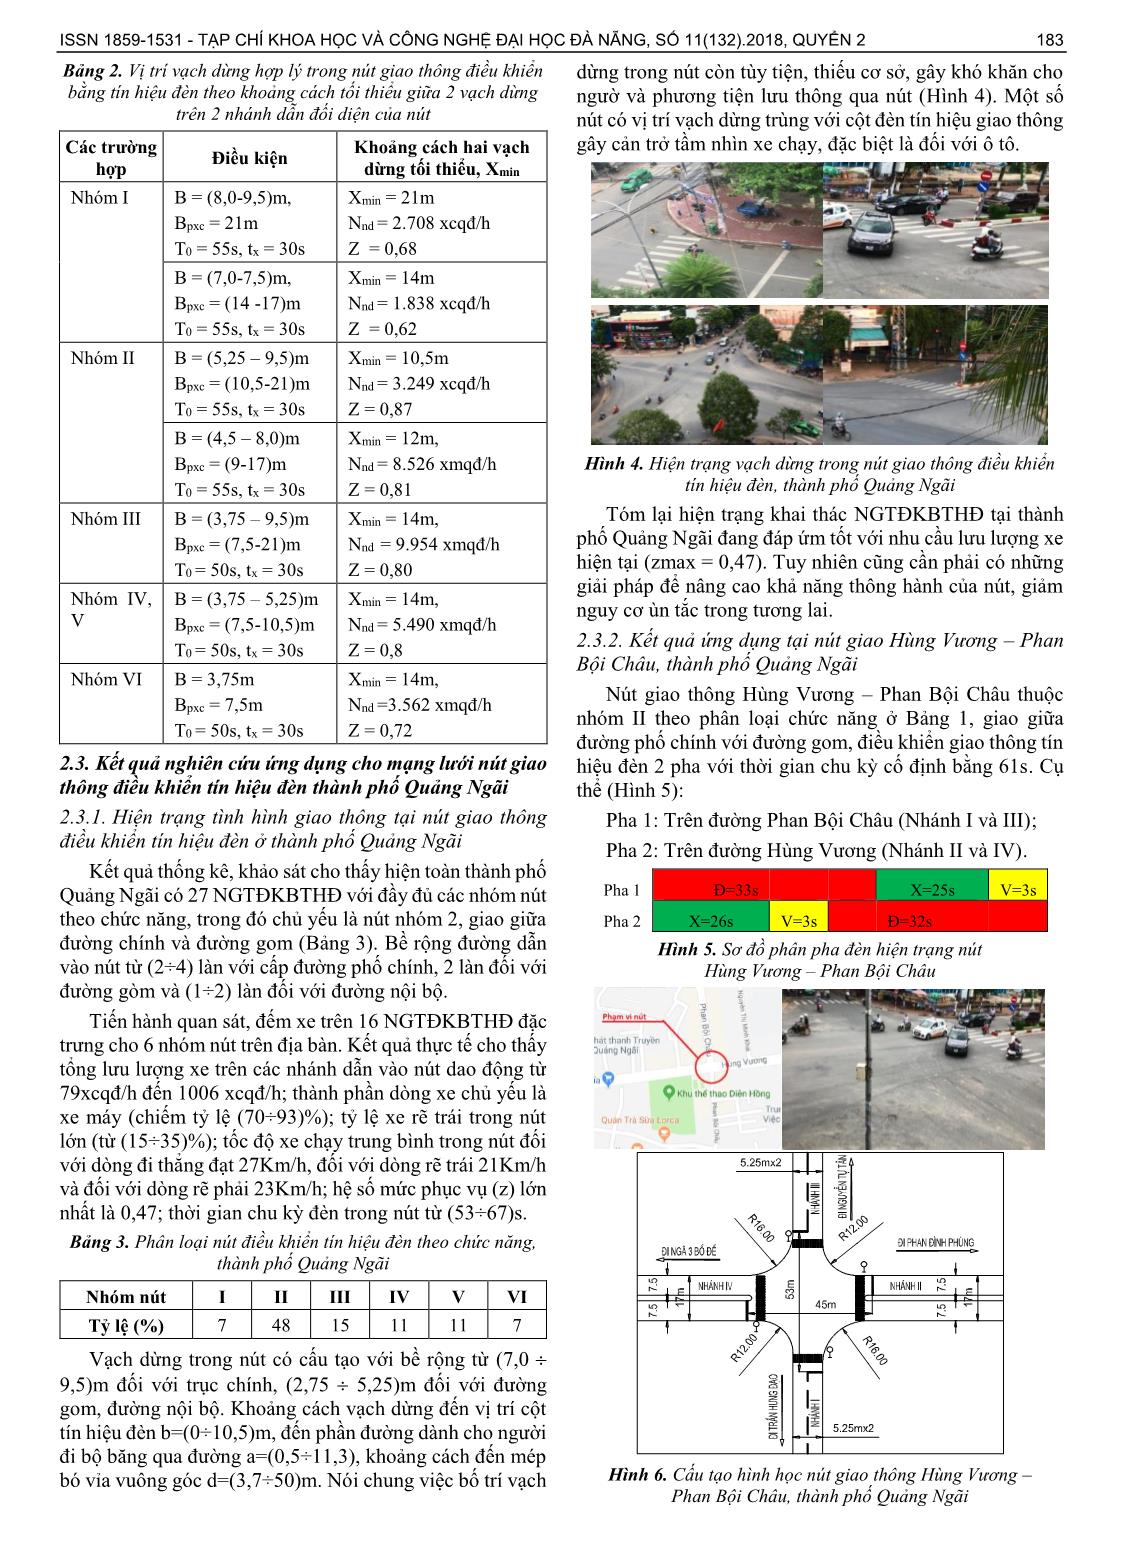 Xác định vị trí vạch dừng hợp lý trong nút giao thông điều khiển bằng tín hiệu đèn cho một số nhóm nút ở đô thị miền Trung Việt Nam trang 3